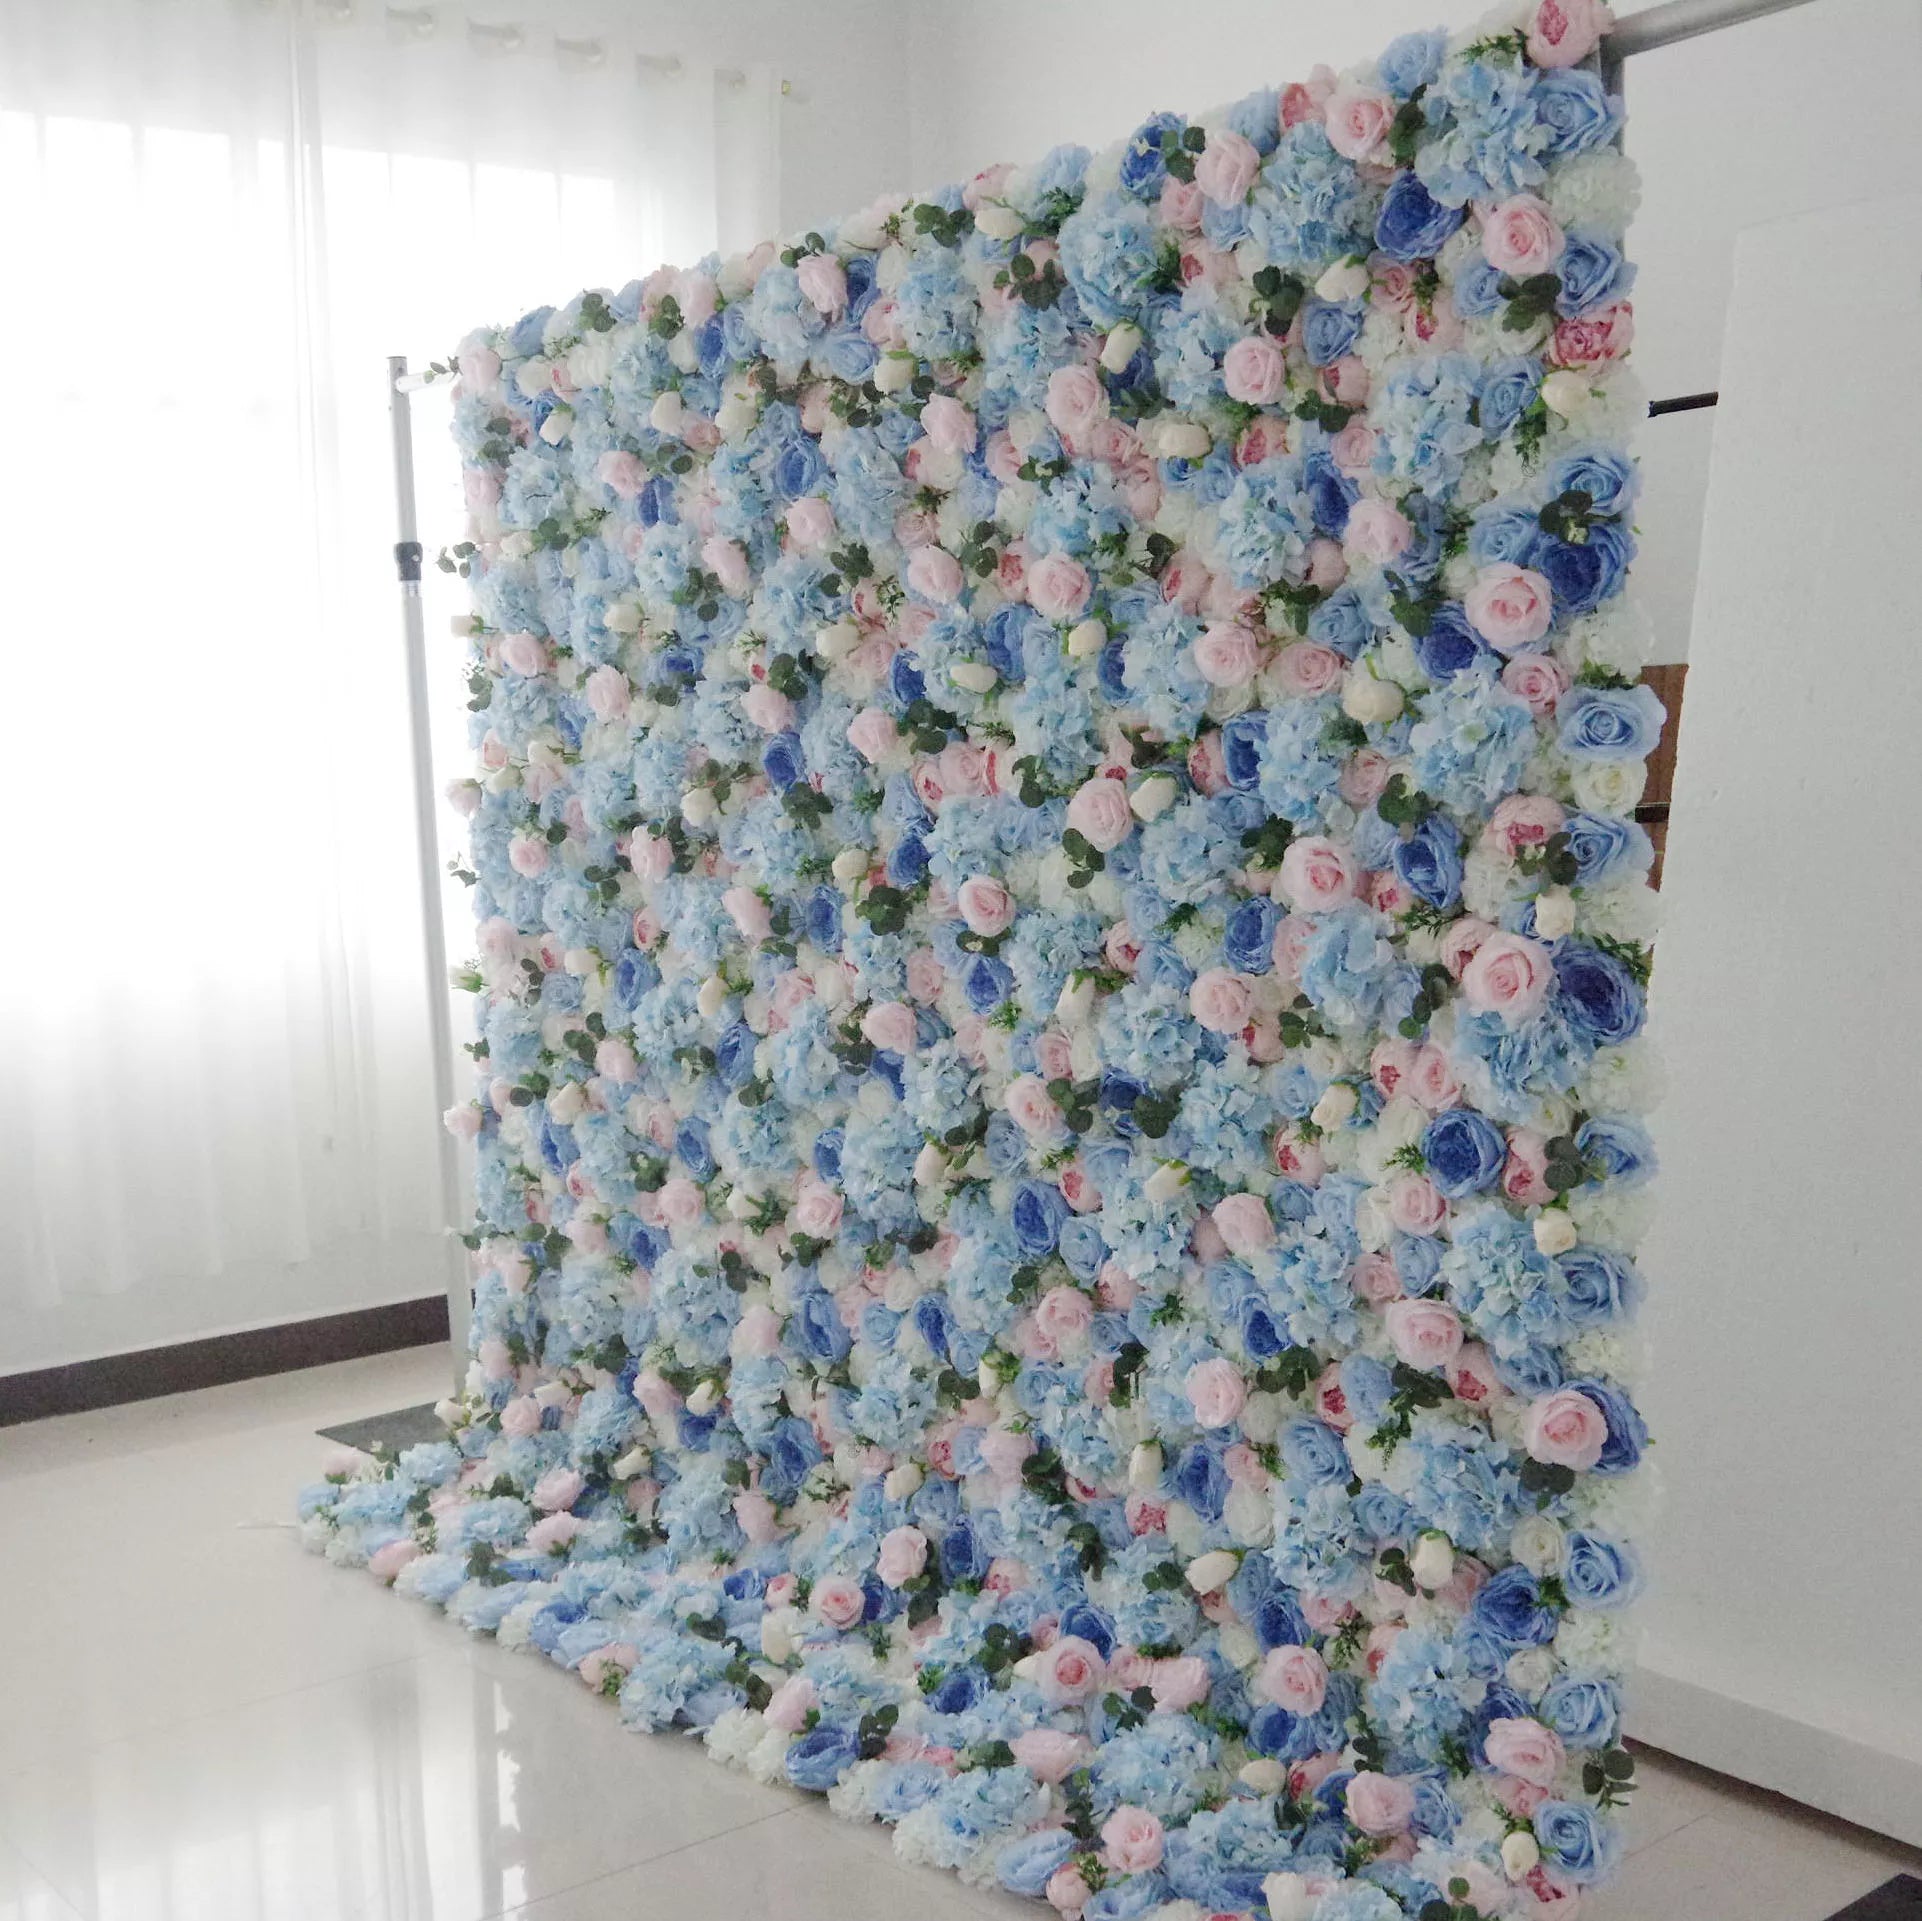 Valar Flowers Roll Up Tissu Artificiel Mixte Bleu Bébé, Pinky et Blanc Floral Mur Toile de Fond de Mariage, Décor de Fête Florale, Photographie d'Événement-VF-081 